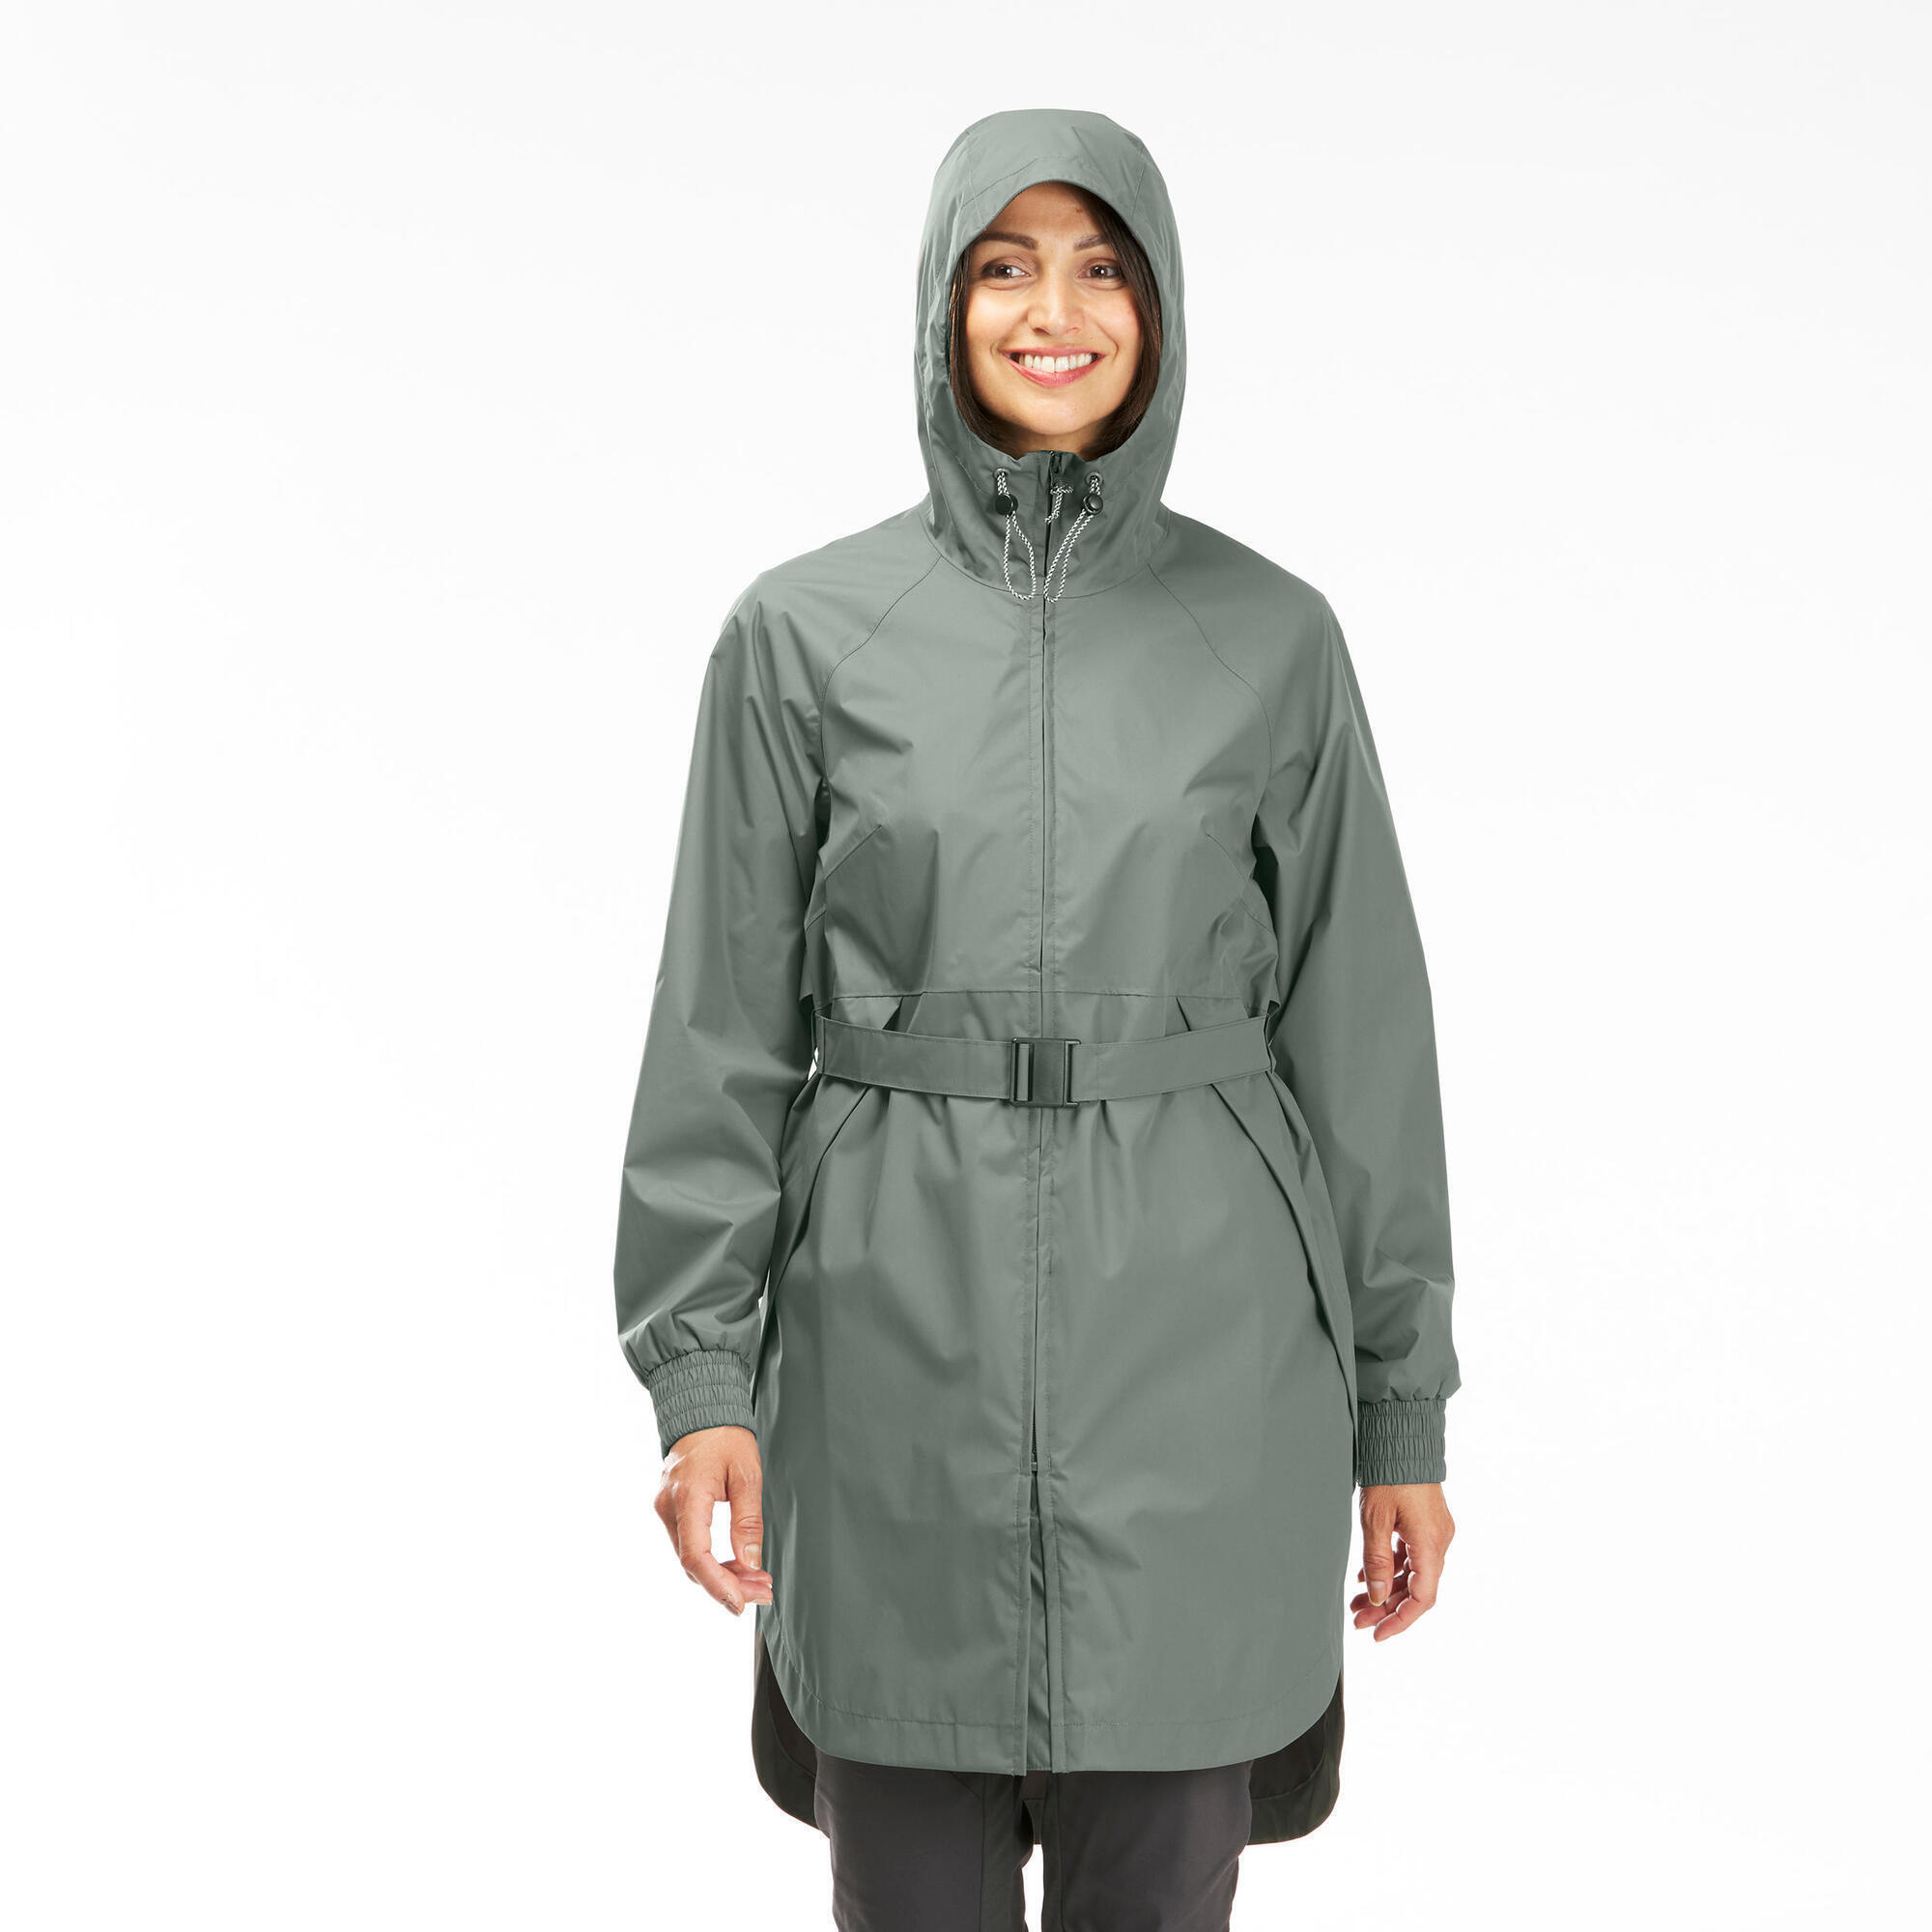 Women's Long Waterproof Hiking Jacket - Raincut Long 5/14